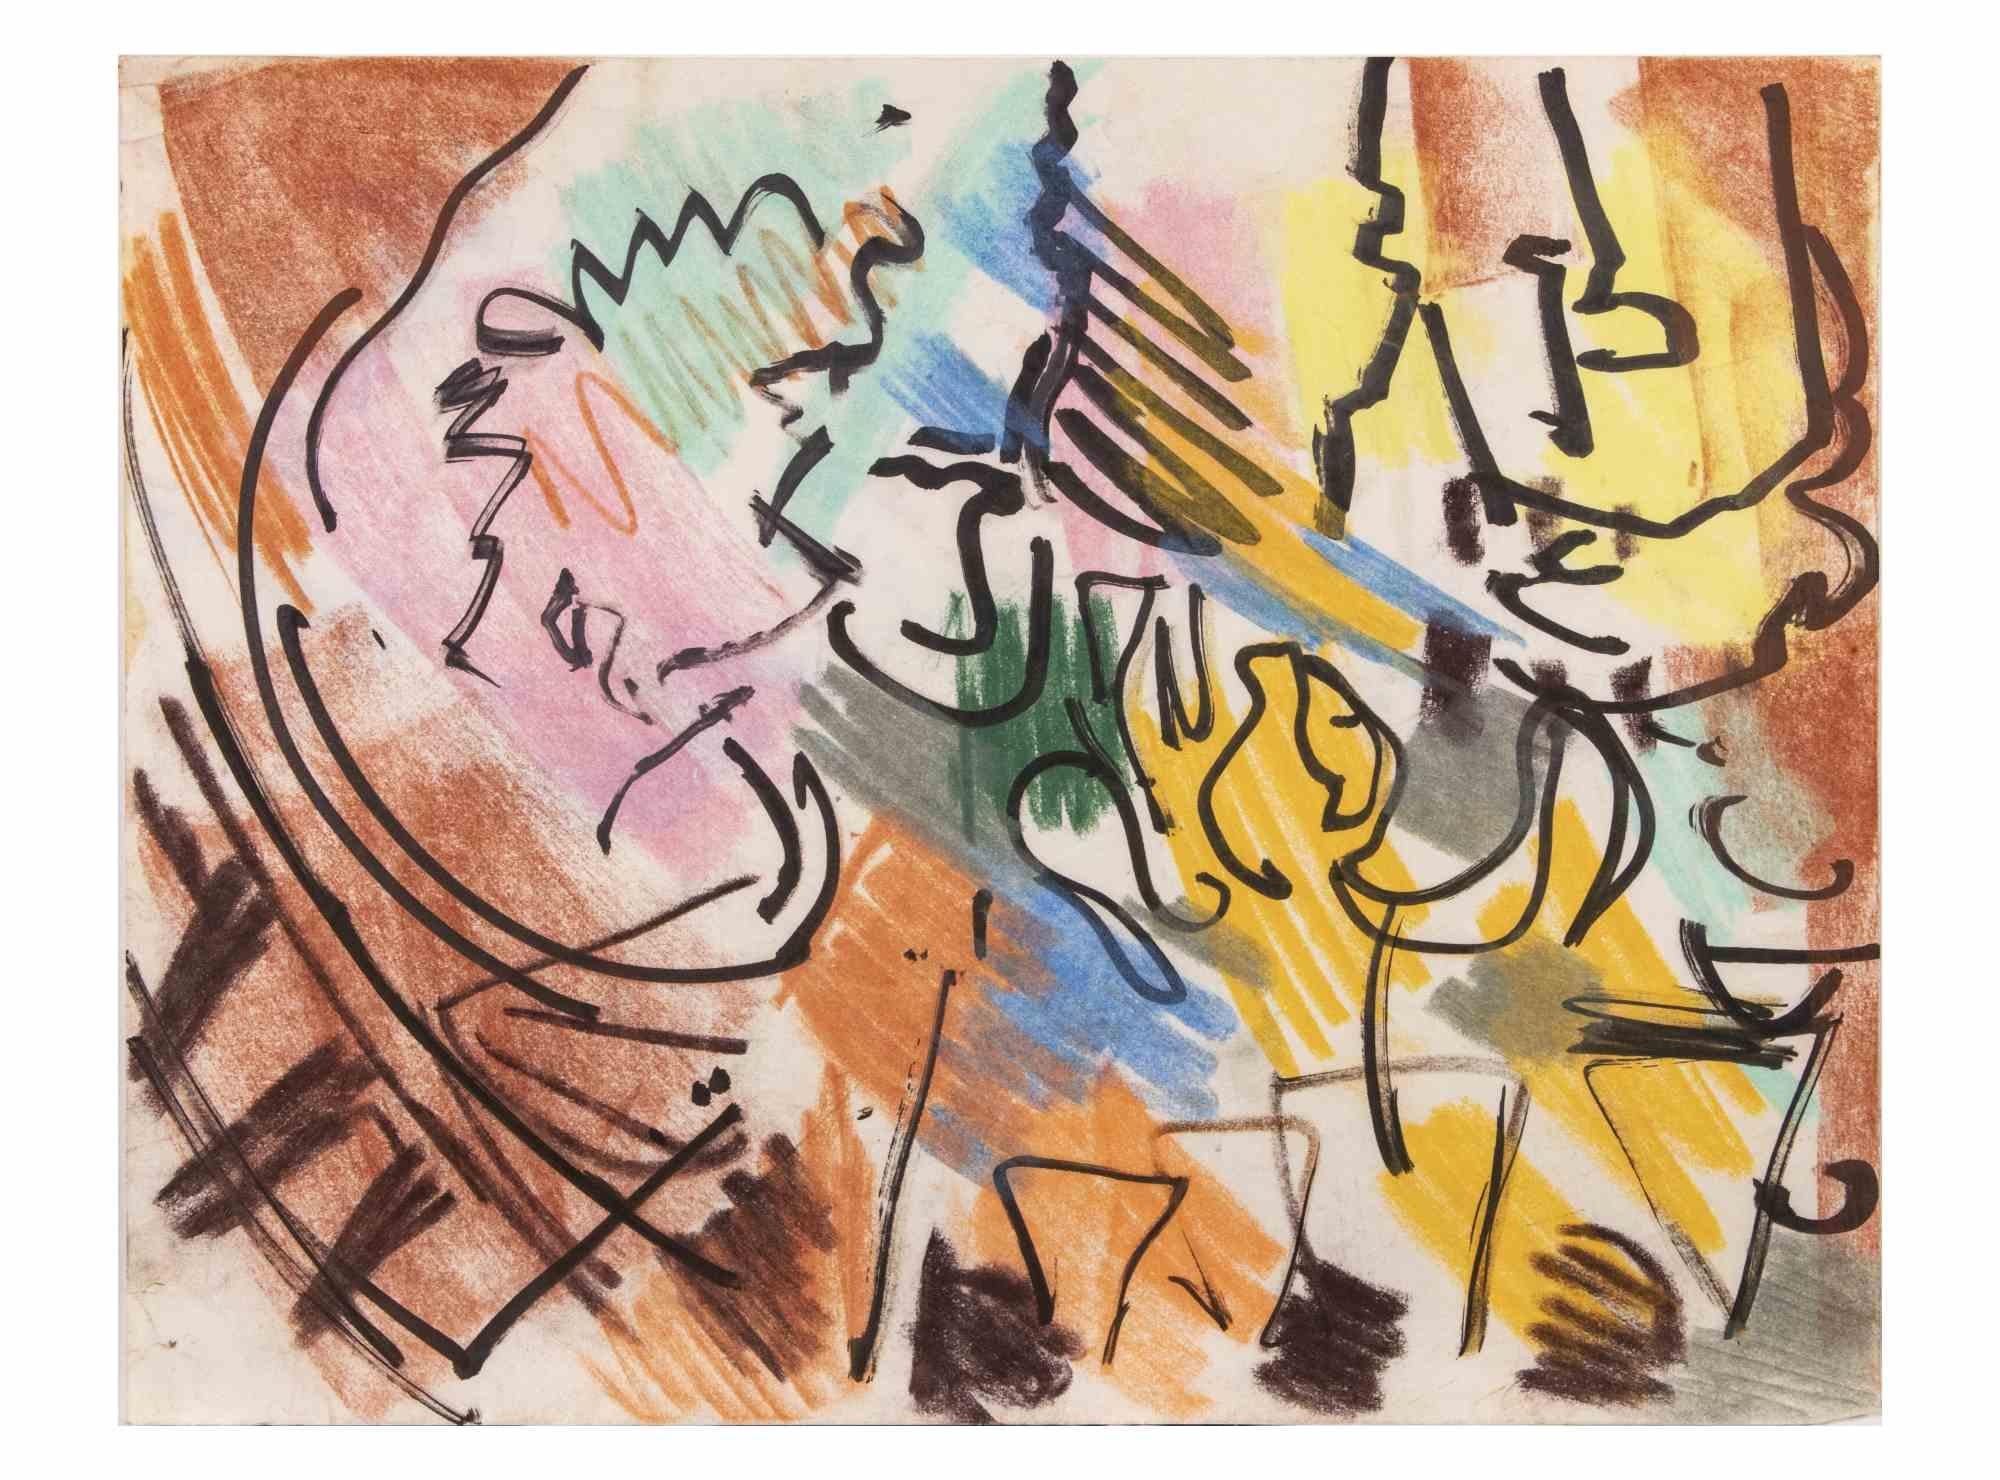 Composition abstraite est un dessin au pastel et aux marqueurs de couleur réalisé par Reynold Arnould.  (Le Havre 1919 - Parigi 1980).

Bon état sur un papier blanc.

Pas de signature.

Reynold Arnould est né au Havre, en France, en 1919. Il a